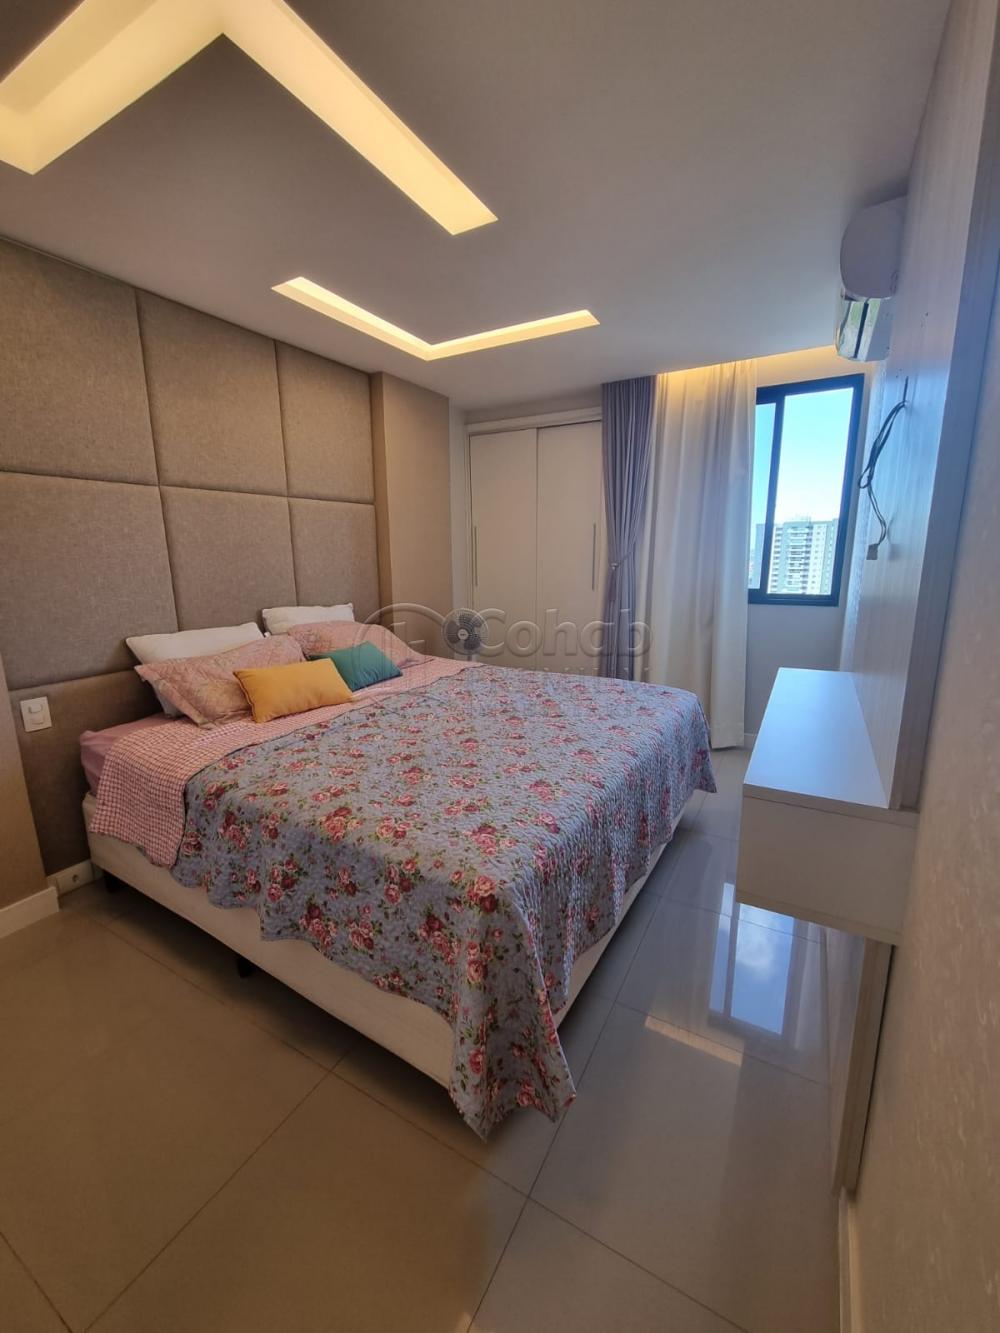 Comprar Apartamento / Padrão em Aracaju R$ 770.000,00 - Foto 8